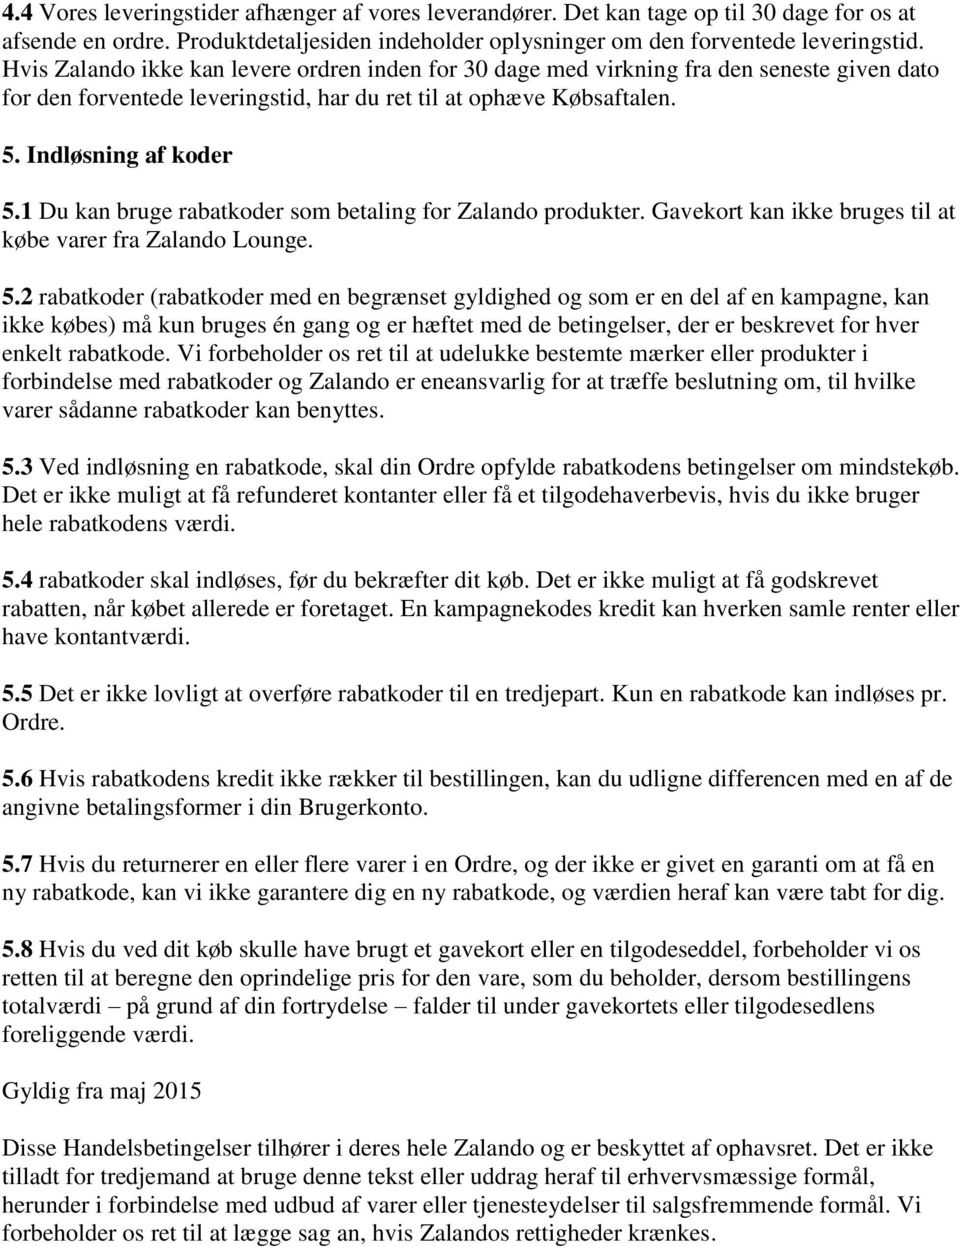 Disse Handelsbetingelser ( Handelsbetingelser ) gælder for de følgende  online-butikker: Zalando.dk, Zalando Lounge. - PDF Gratis download